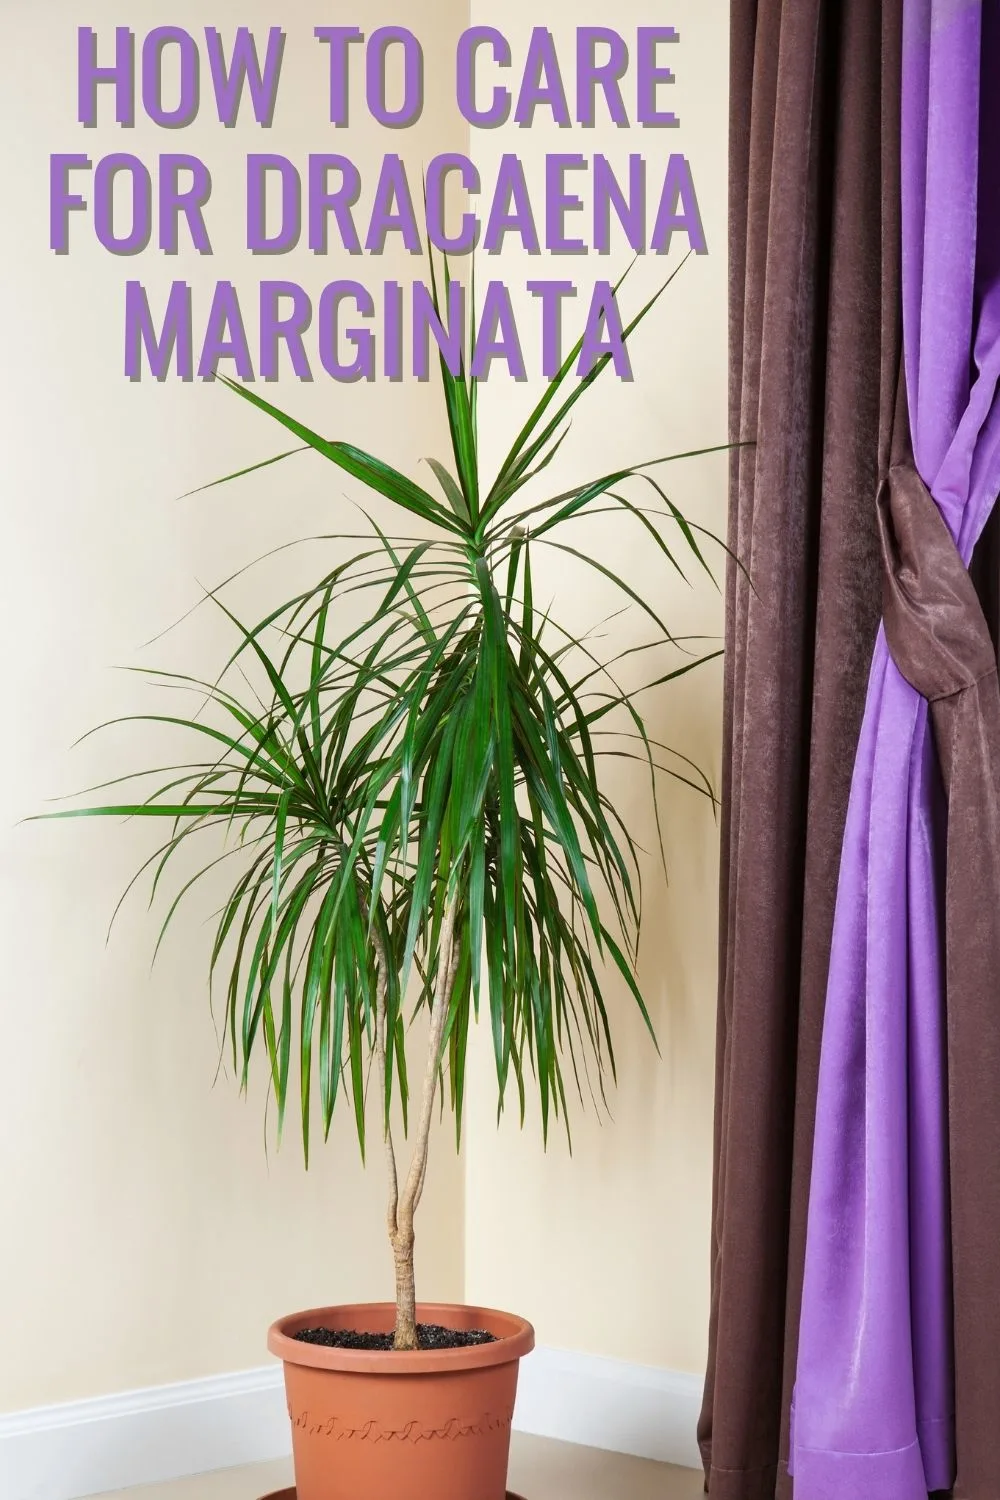 How to care for dracaena marginata